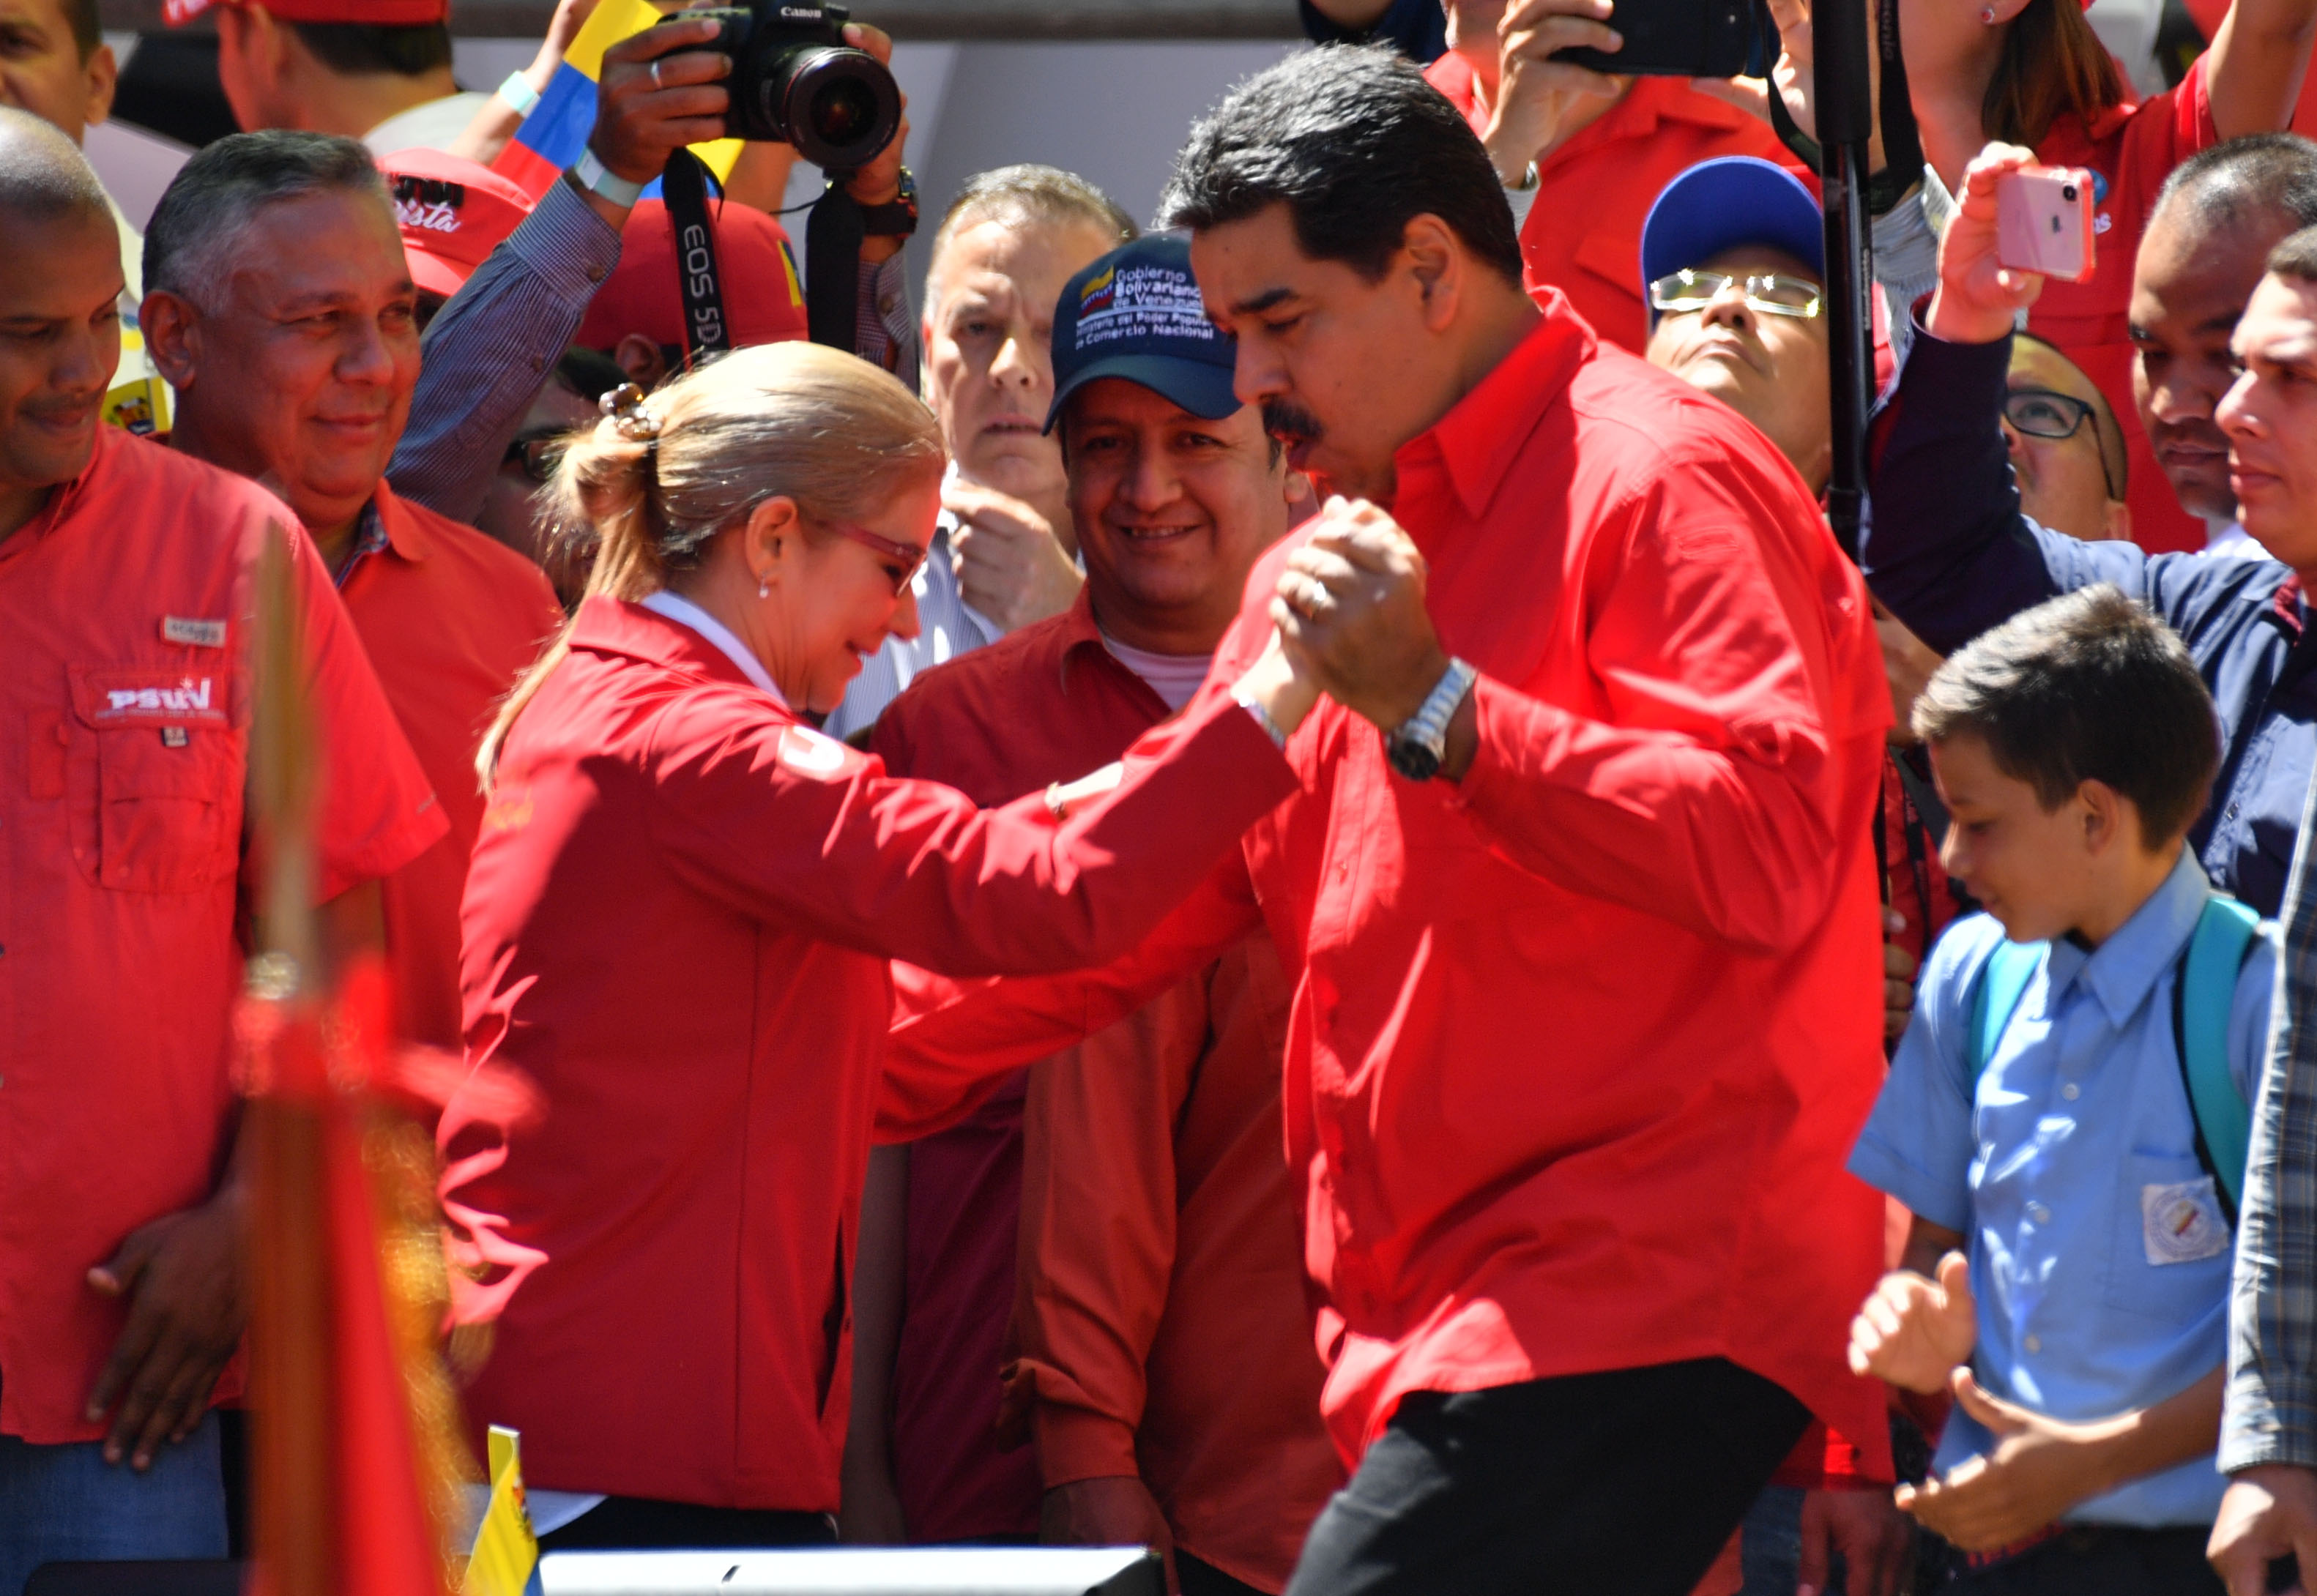 El baile de Maduro que causó indignación en la oposición venezolana